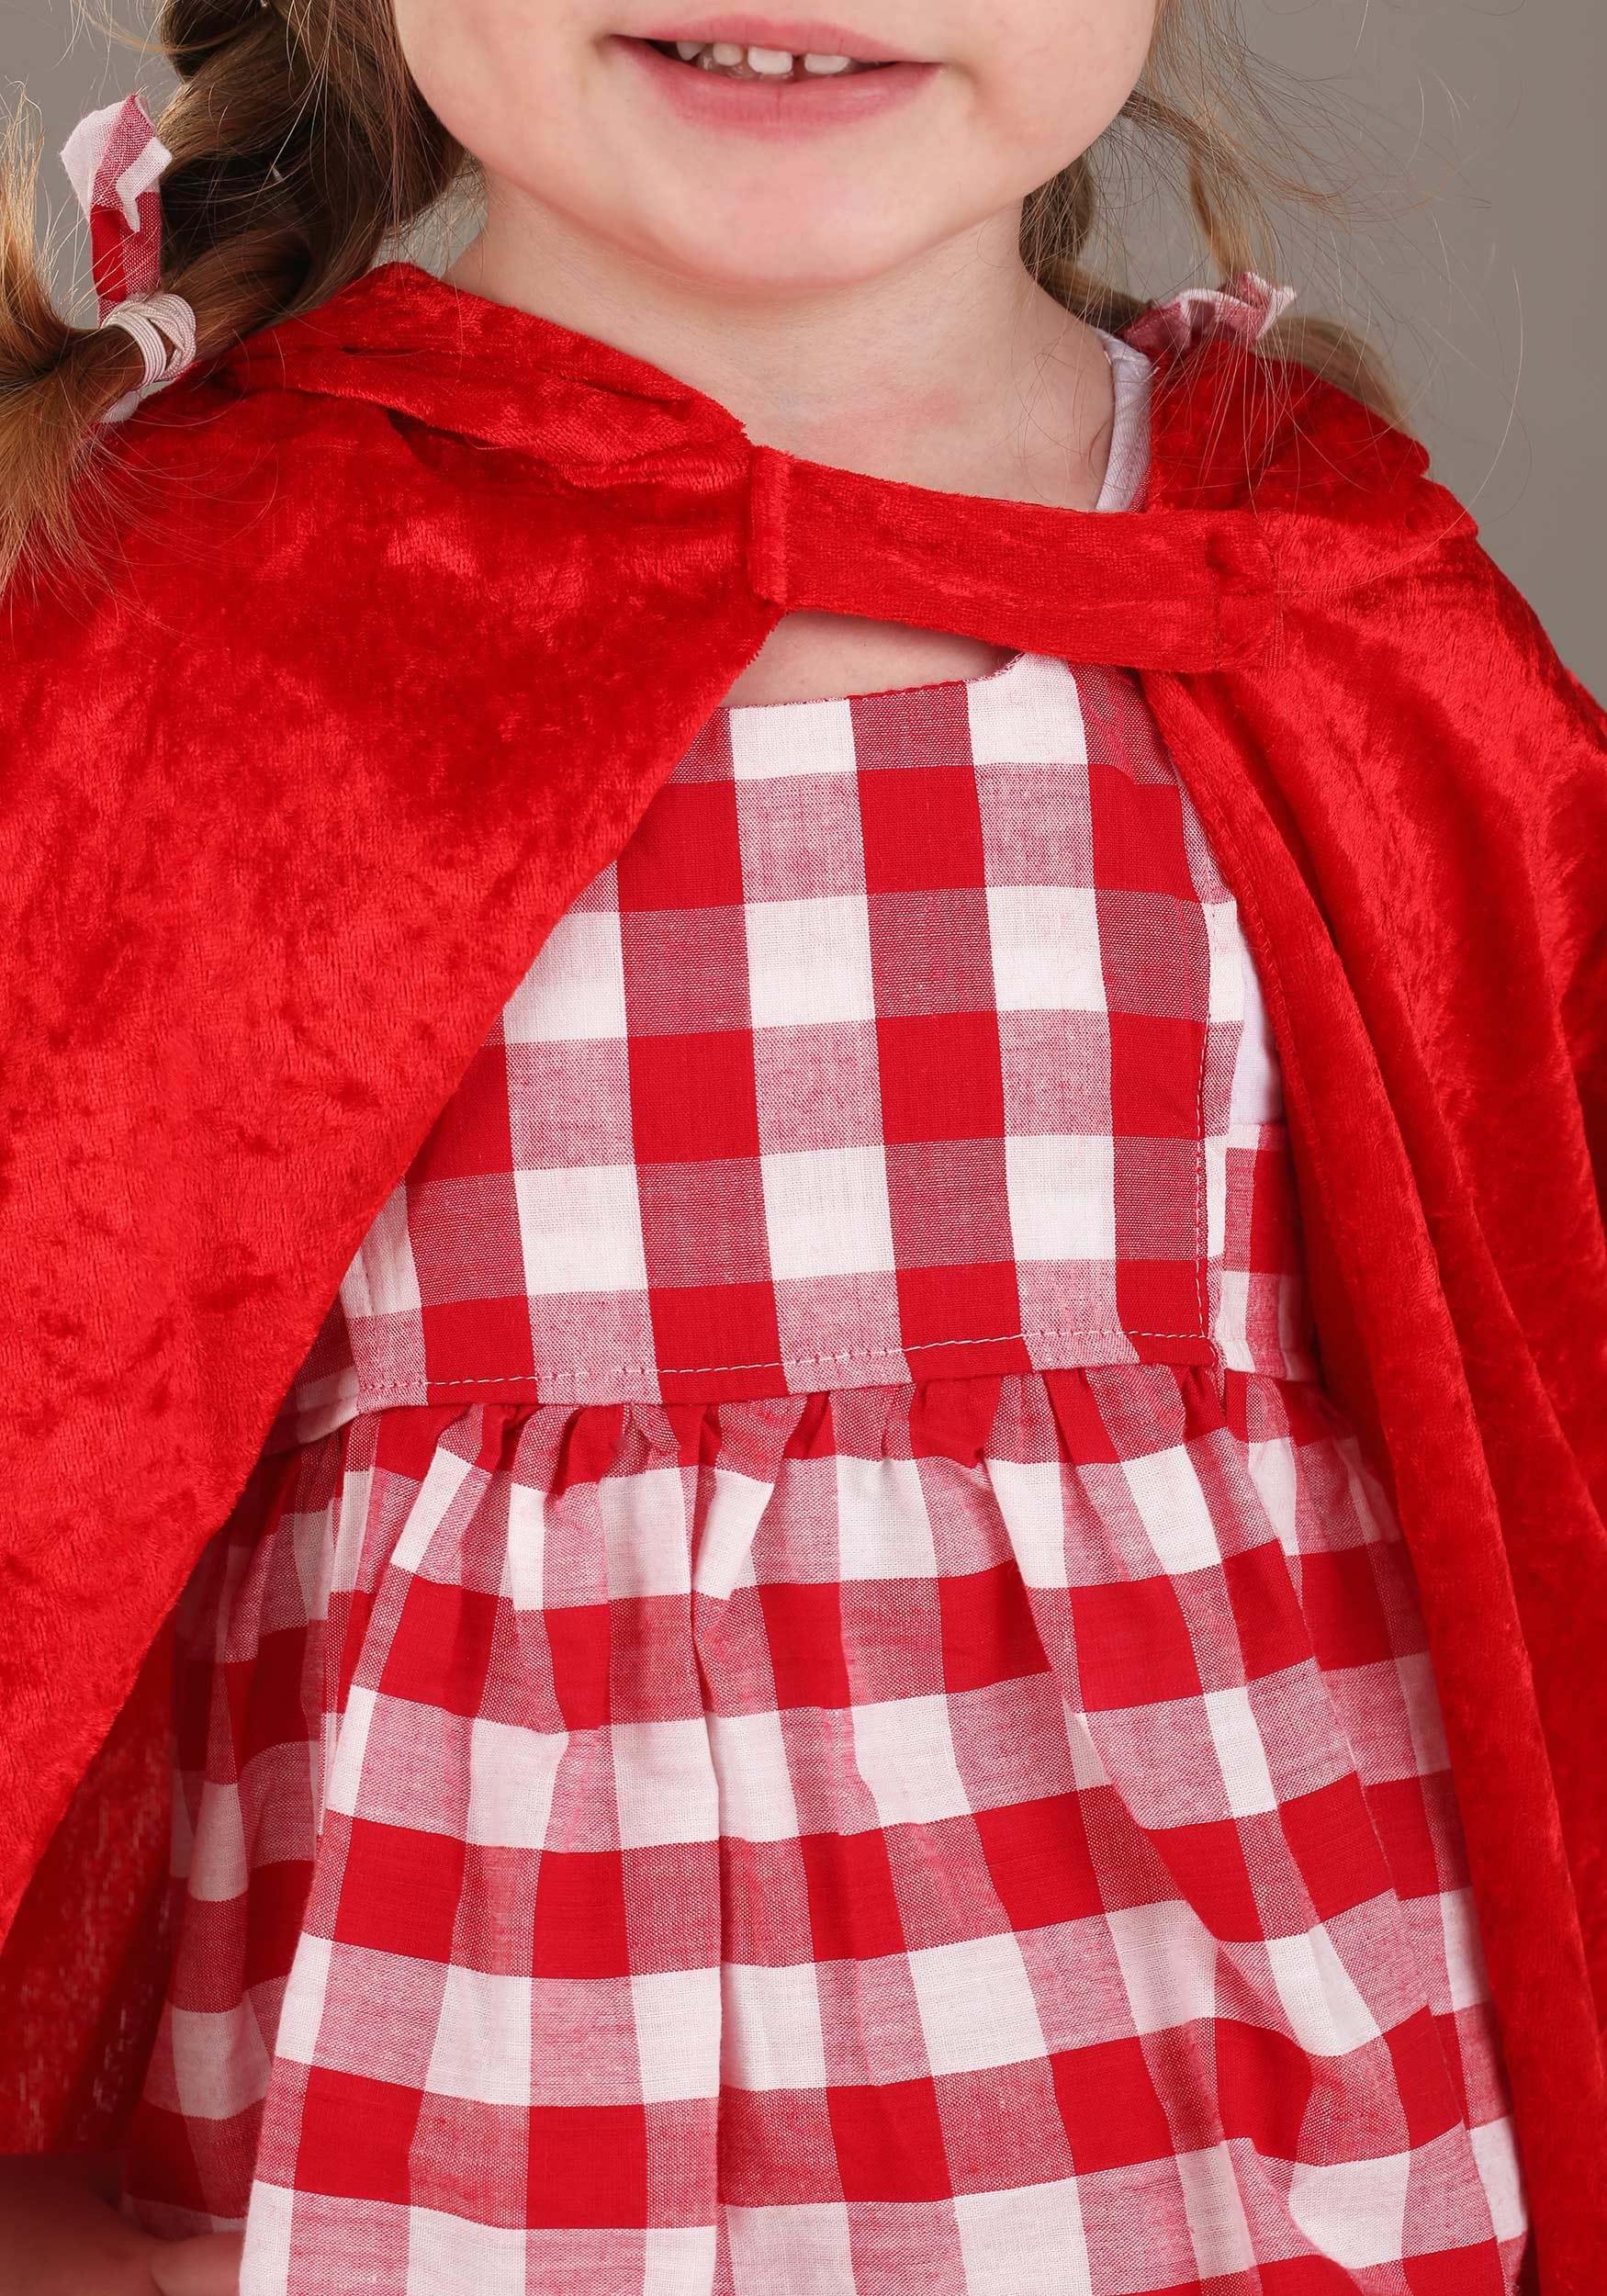 Disfraz de Caperucita Roja con tutú para niños